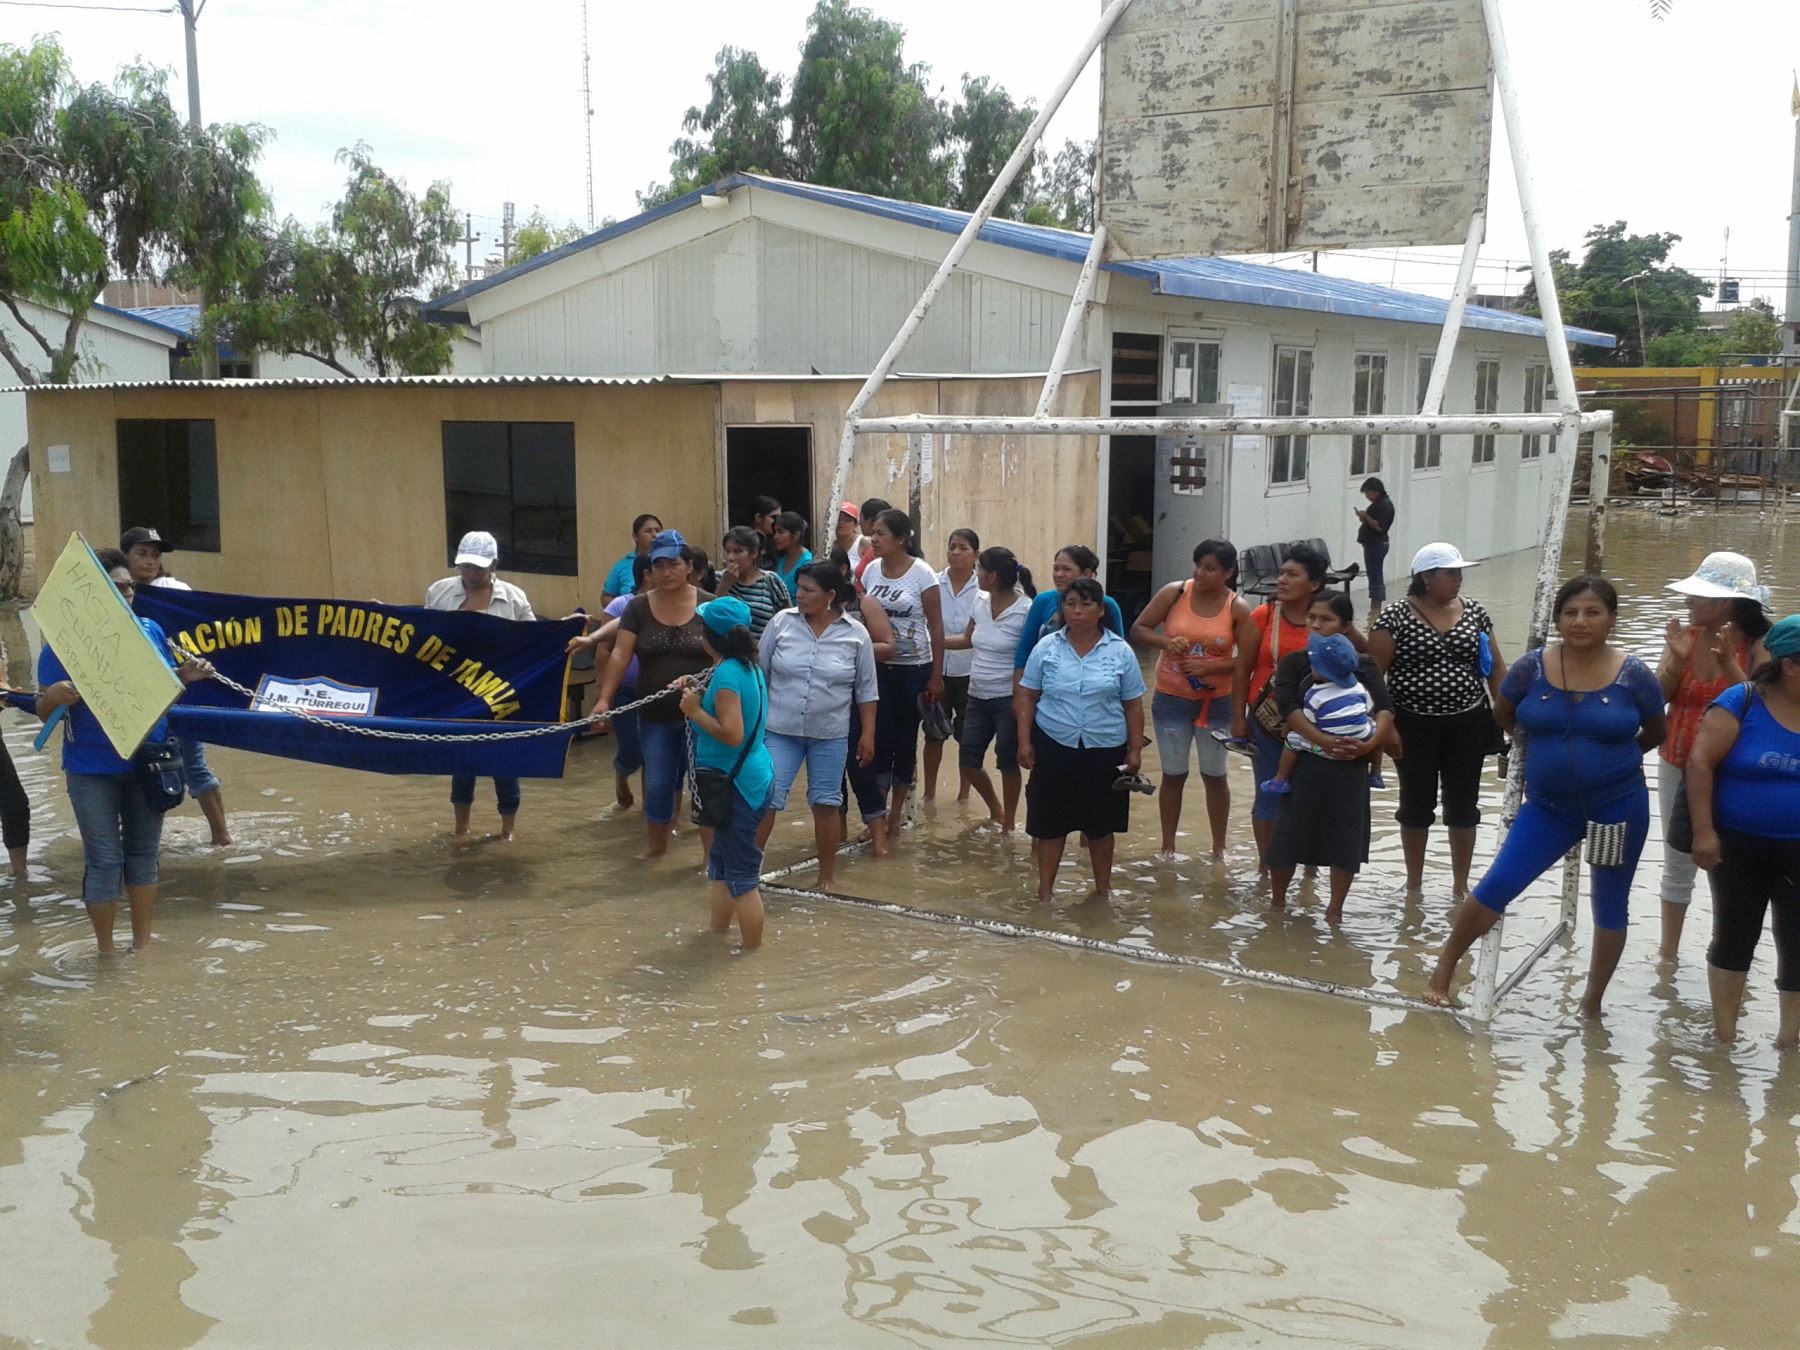 Diversos colegios de Lambayeque sufrieron daños causadas por las lluvias intensas que se registran en dicha región. Por este motivo, se dispuso el retorno a clases virtuales. Foto: ANDINA/archivo.